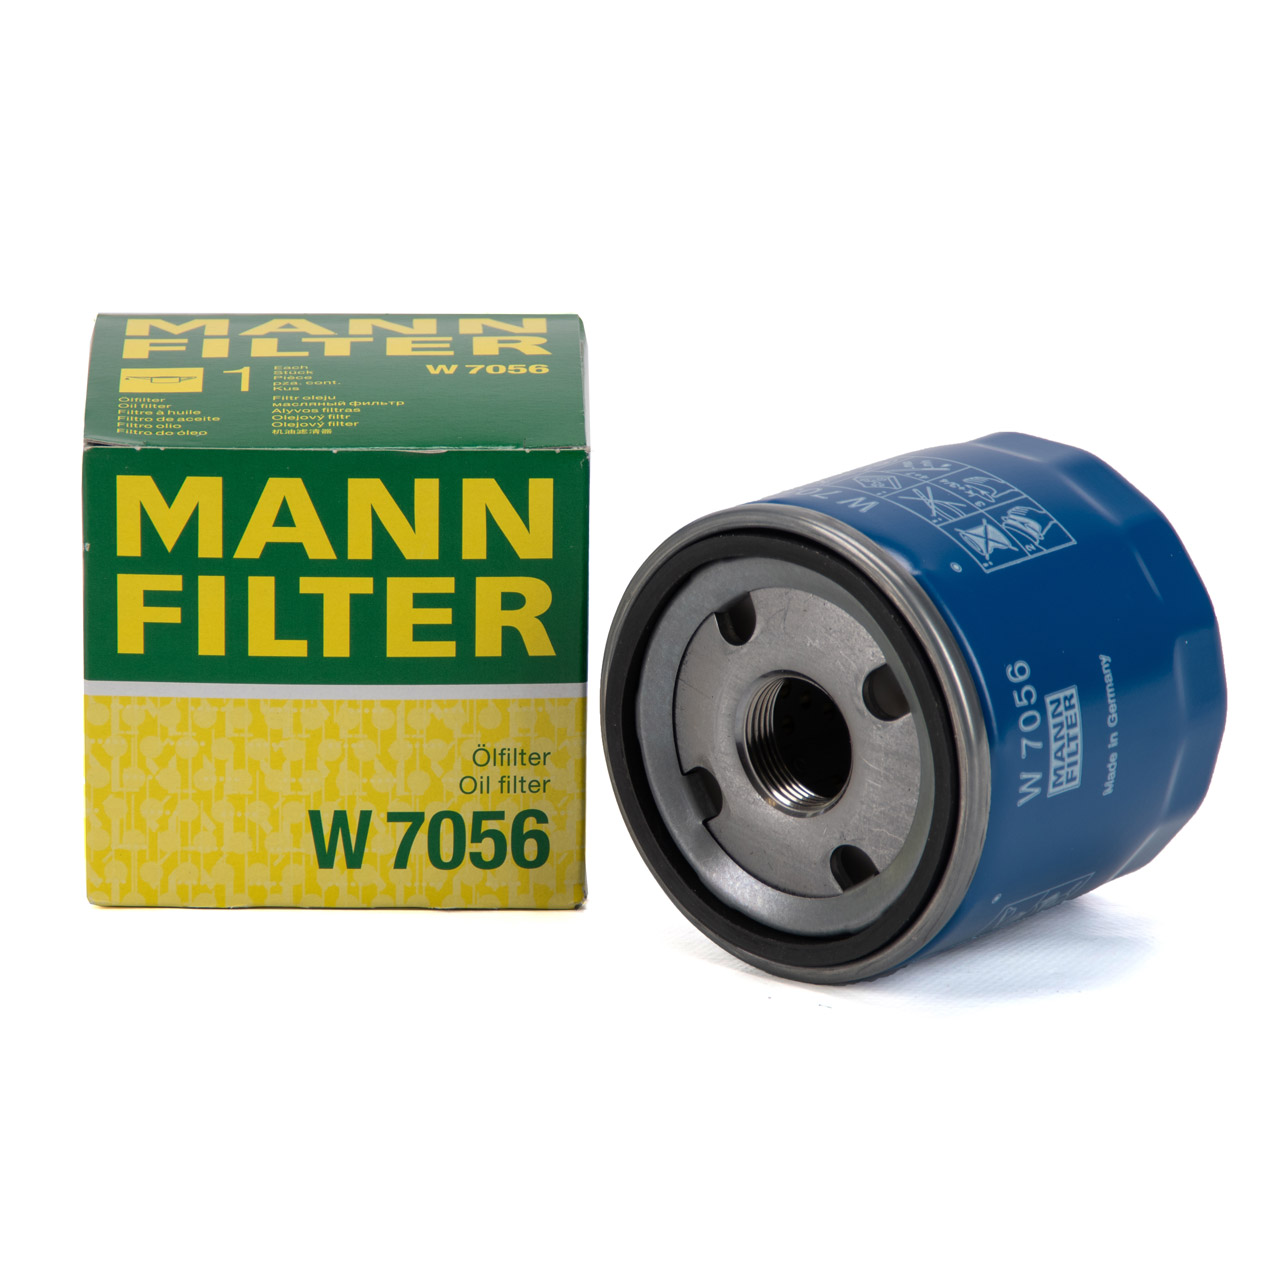 MANN-FILTER Ölfilter - W 7056 